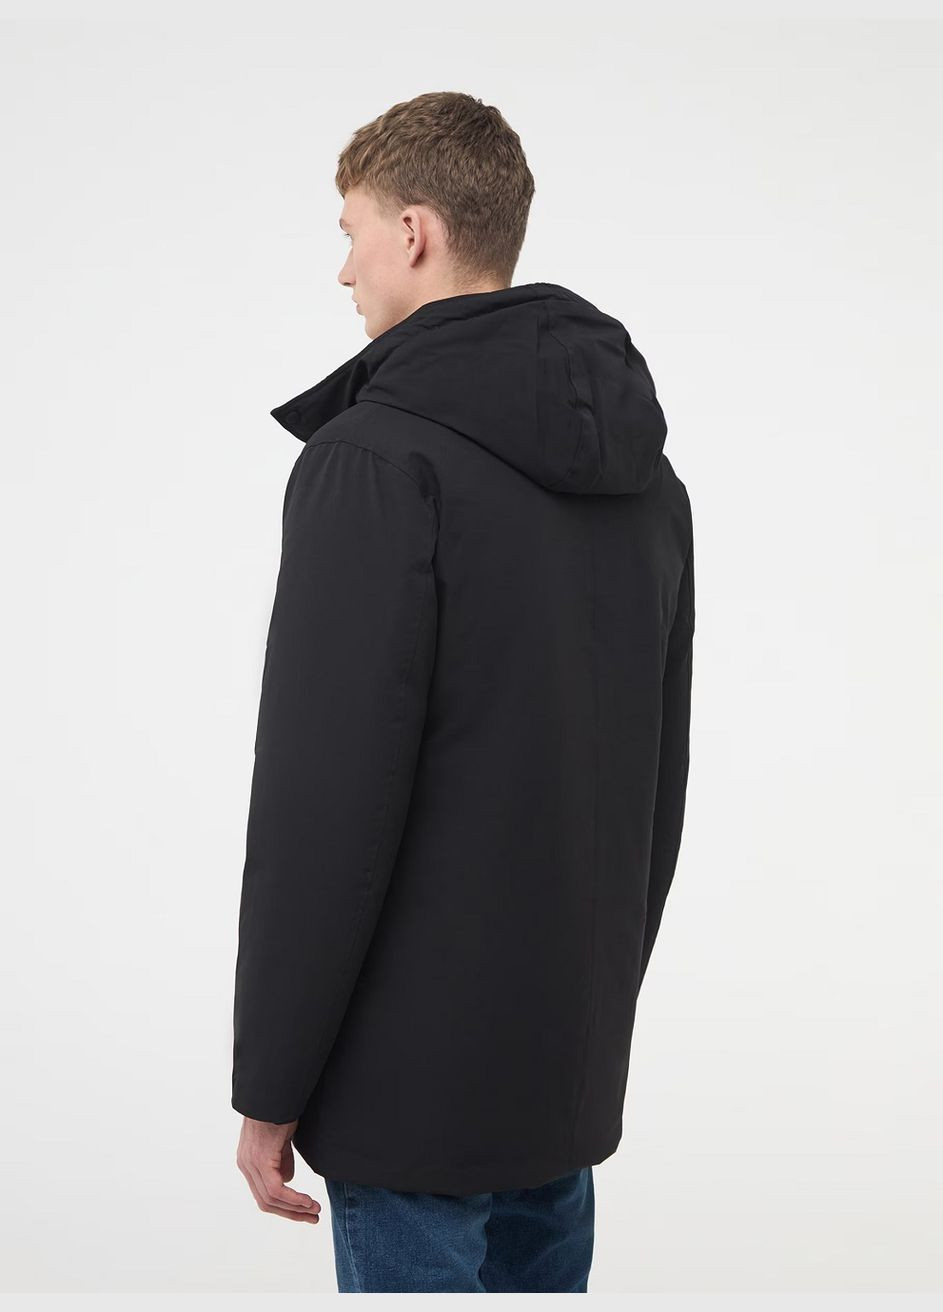 Черная зимняя куртка муж Terranova